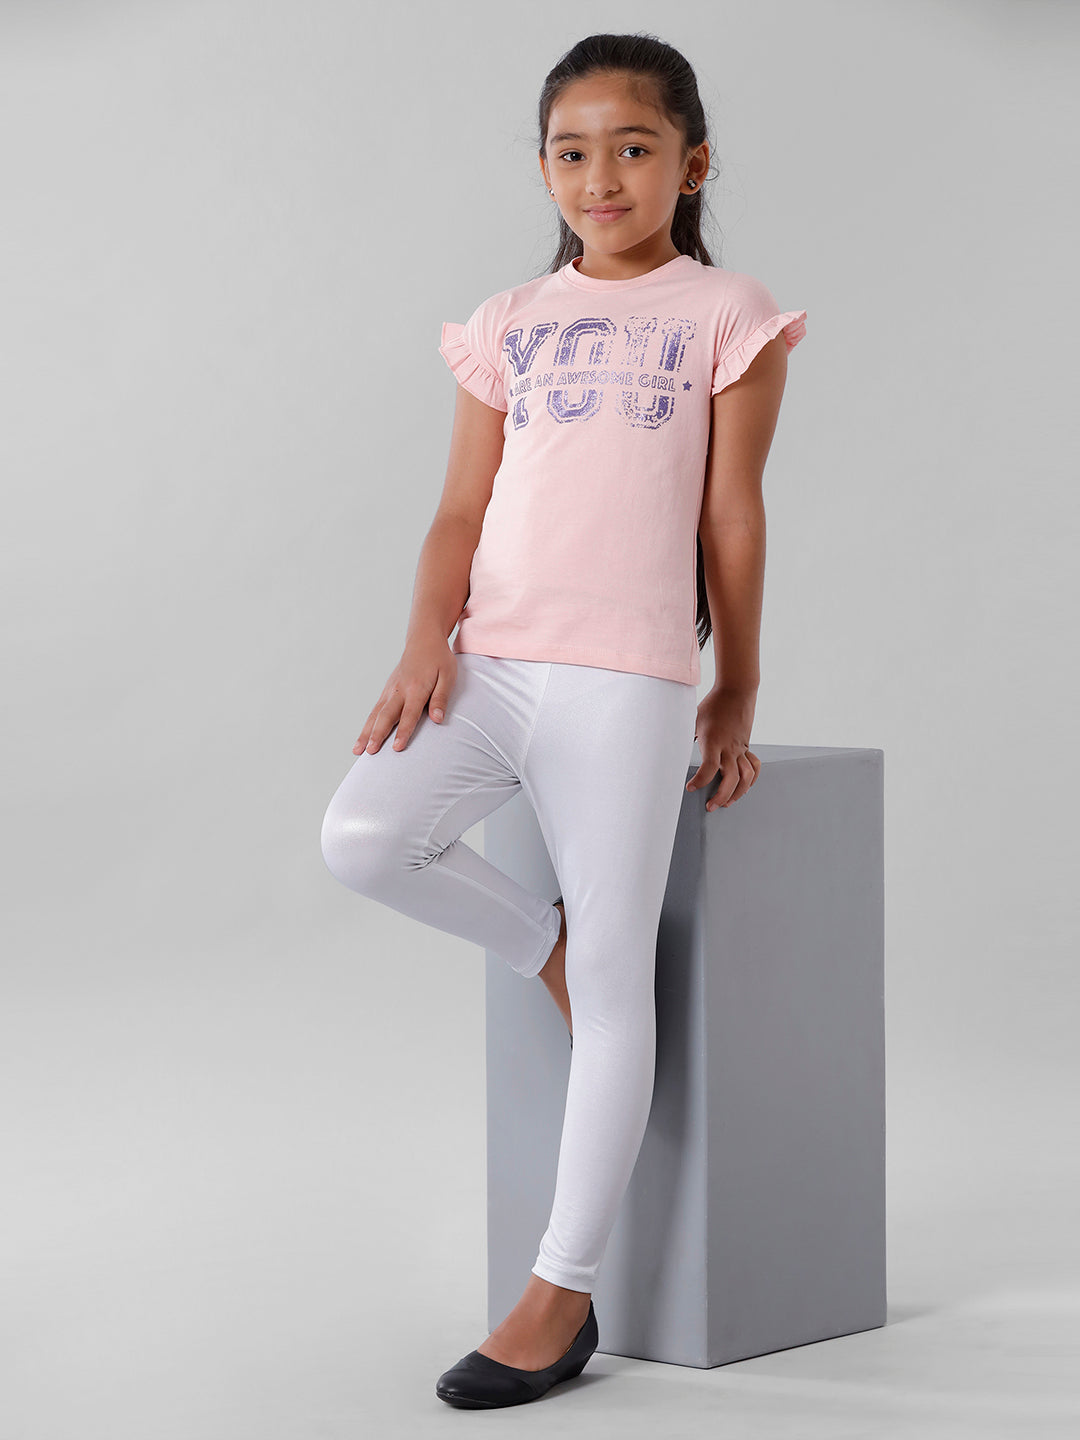 Buy Kids Girls Top Love T Shirt & Splash Print Fashion Legging Set Age 5-13  Years Online at desertcartINDIA